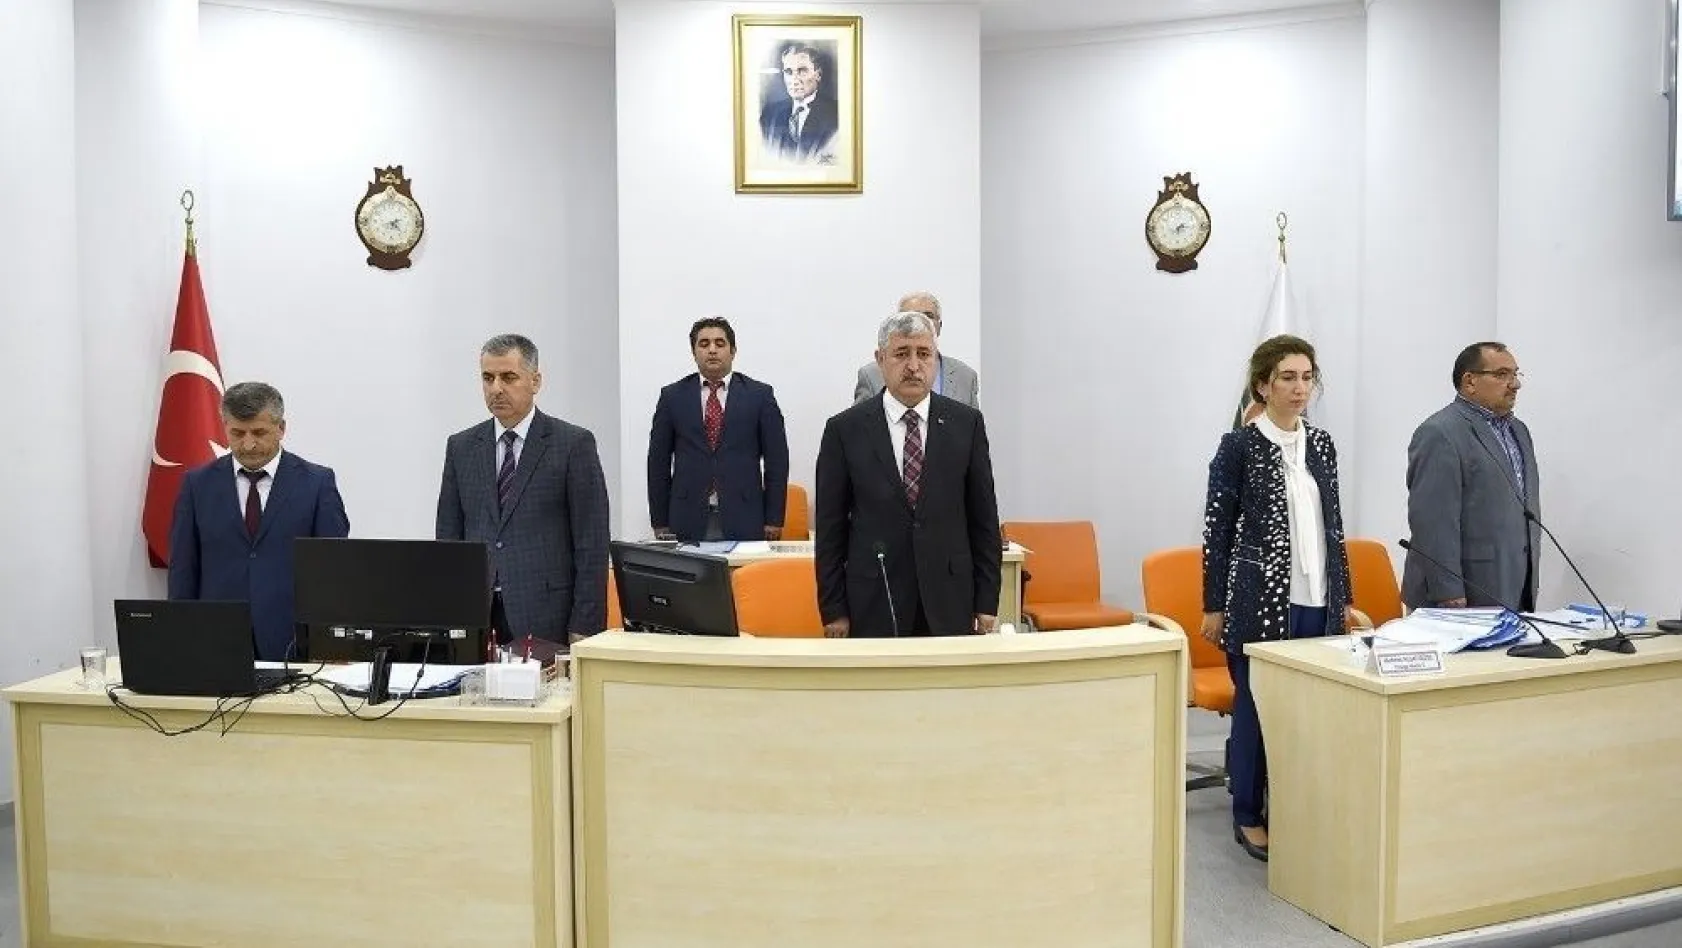 Büyükşehir Belediye Meclisi Polat Başkanlığında toplandı
